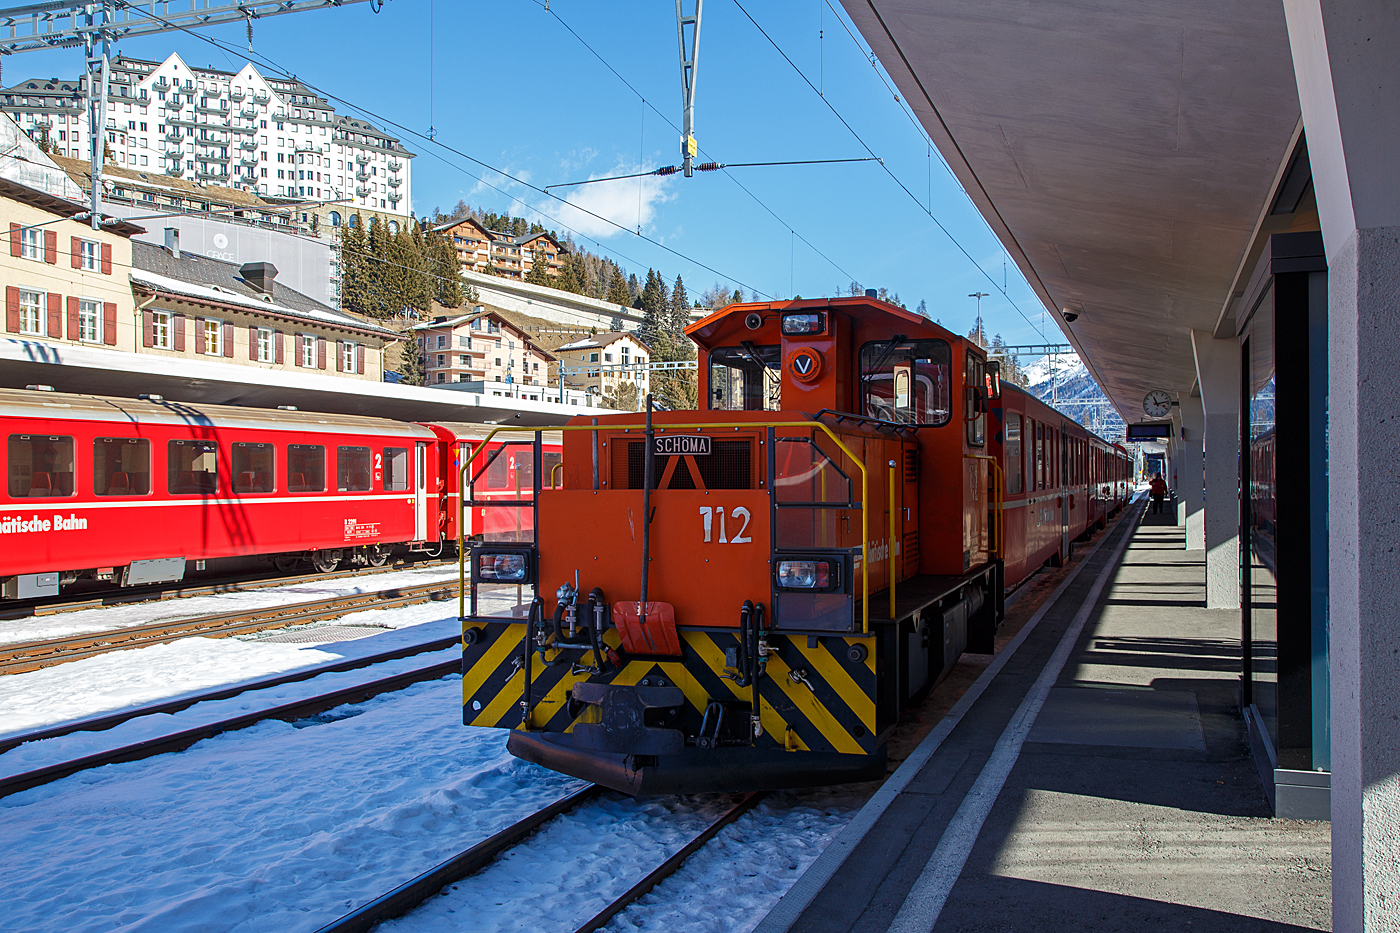 Die RhB Tm 2/2 112 (eine Schöma CFL 250 DCL ) am 20 Februar 2017 im Bahnhof  St. Moritz, bei der Arbeit.

Die Lok wurde 2001 von Schöma (Christoph Schöttler Maschinenfabrik GmbH) in Diepholz unter der Fabriknummer 5667 gebaut und an die RhB geliefert.